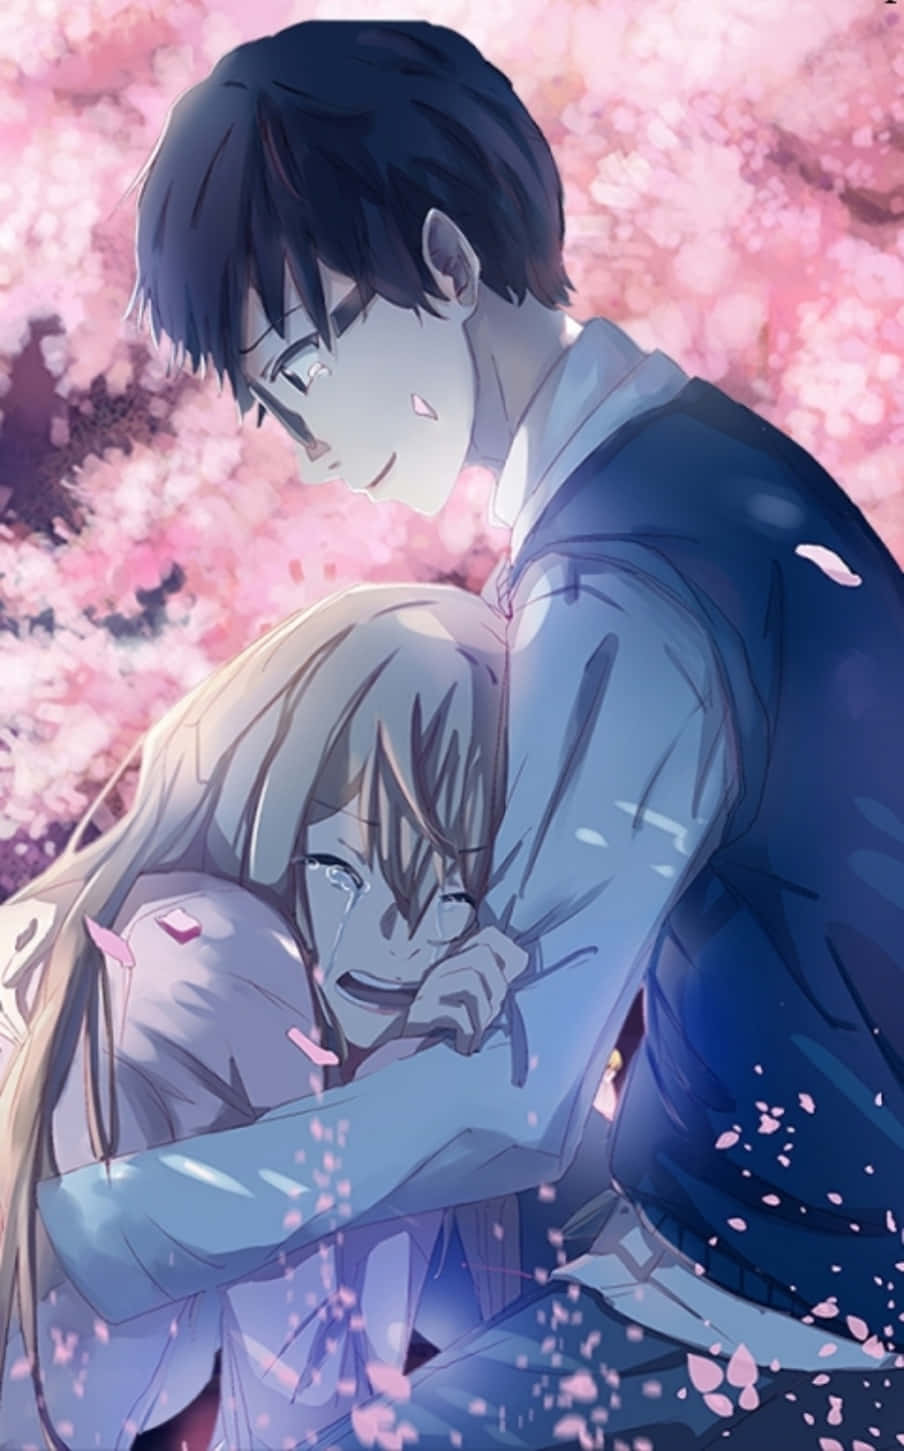 Chibi Anime Couple by XxXNekoxBakaXxX on DeviantArt